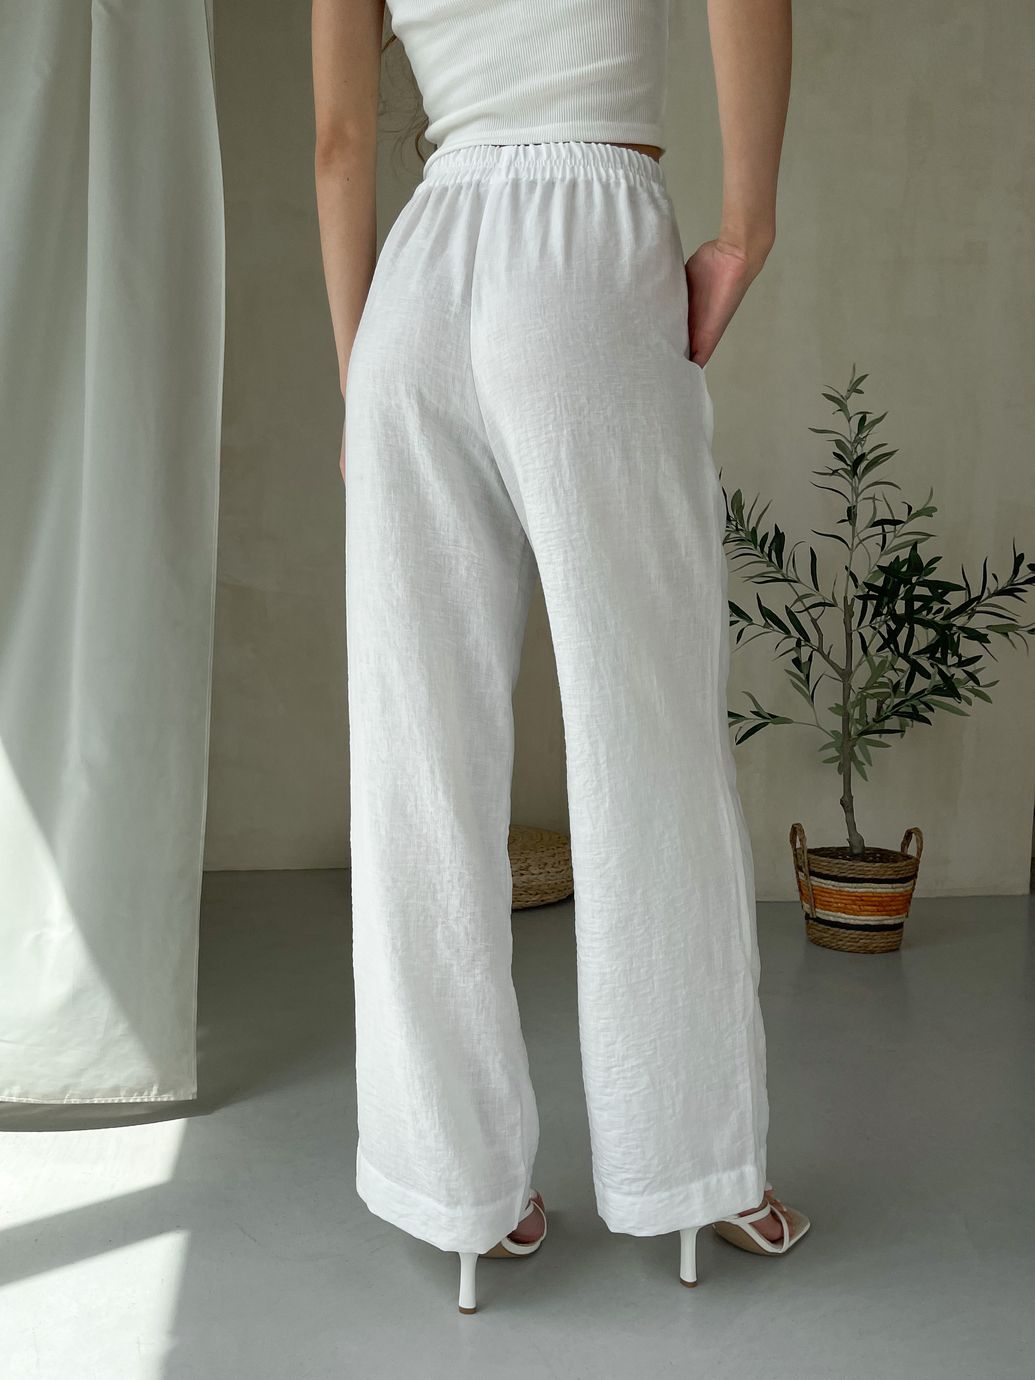 Купить Женский костюм с широкими штанами и рубашкой из льна белый Merlini Лечче 100000542, размер 42-44 (S-M) в интернет-магазине